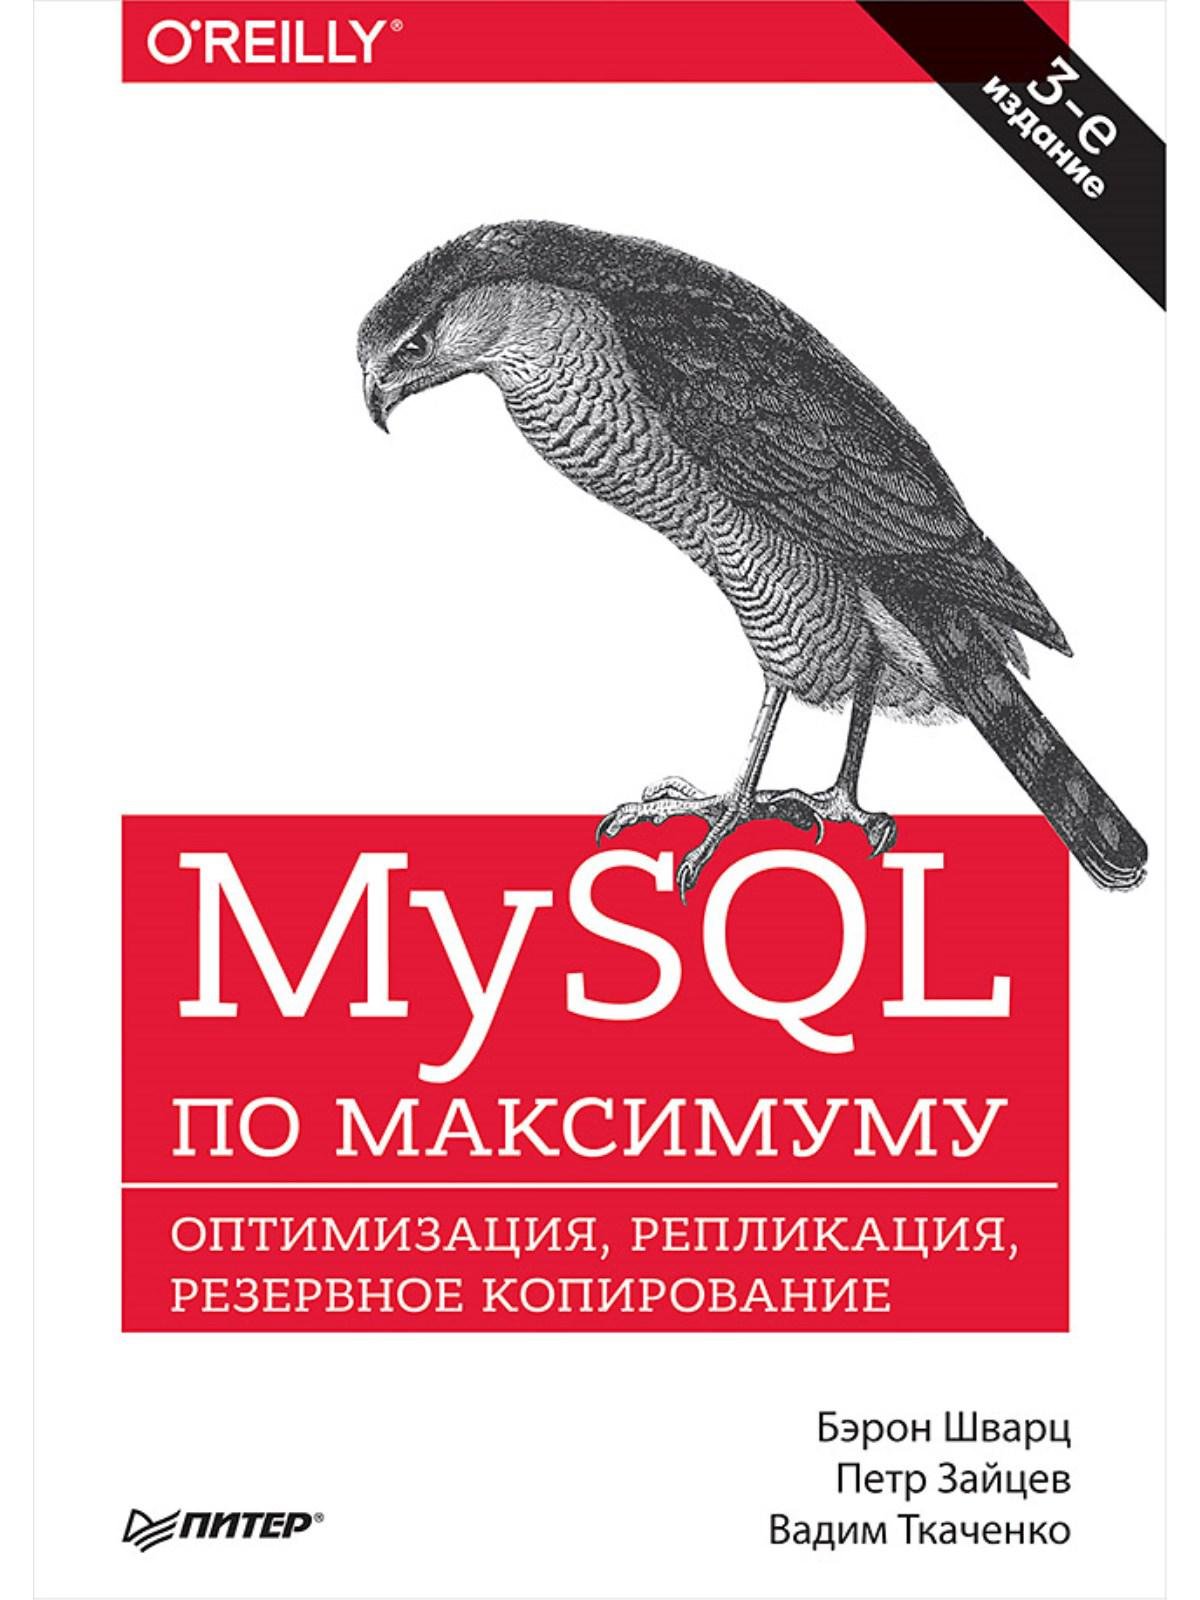 Программирование MySQL по максимуму. 3-е издание оптимизация, резервное копирование, репликация